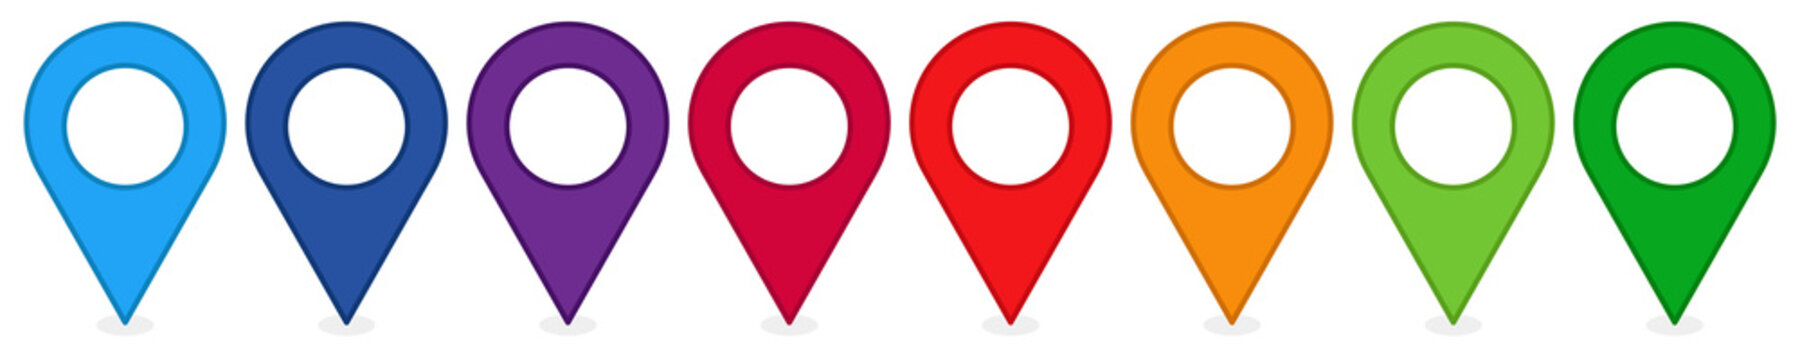 Position Symbol / Standort / GPS / Zeichen / Markierung